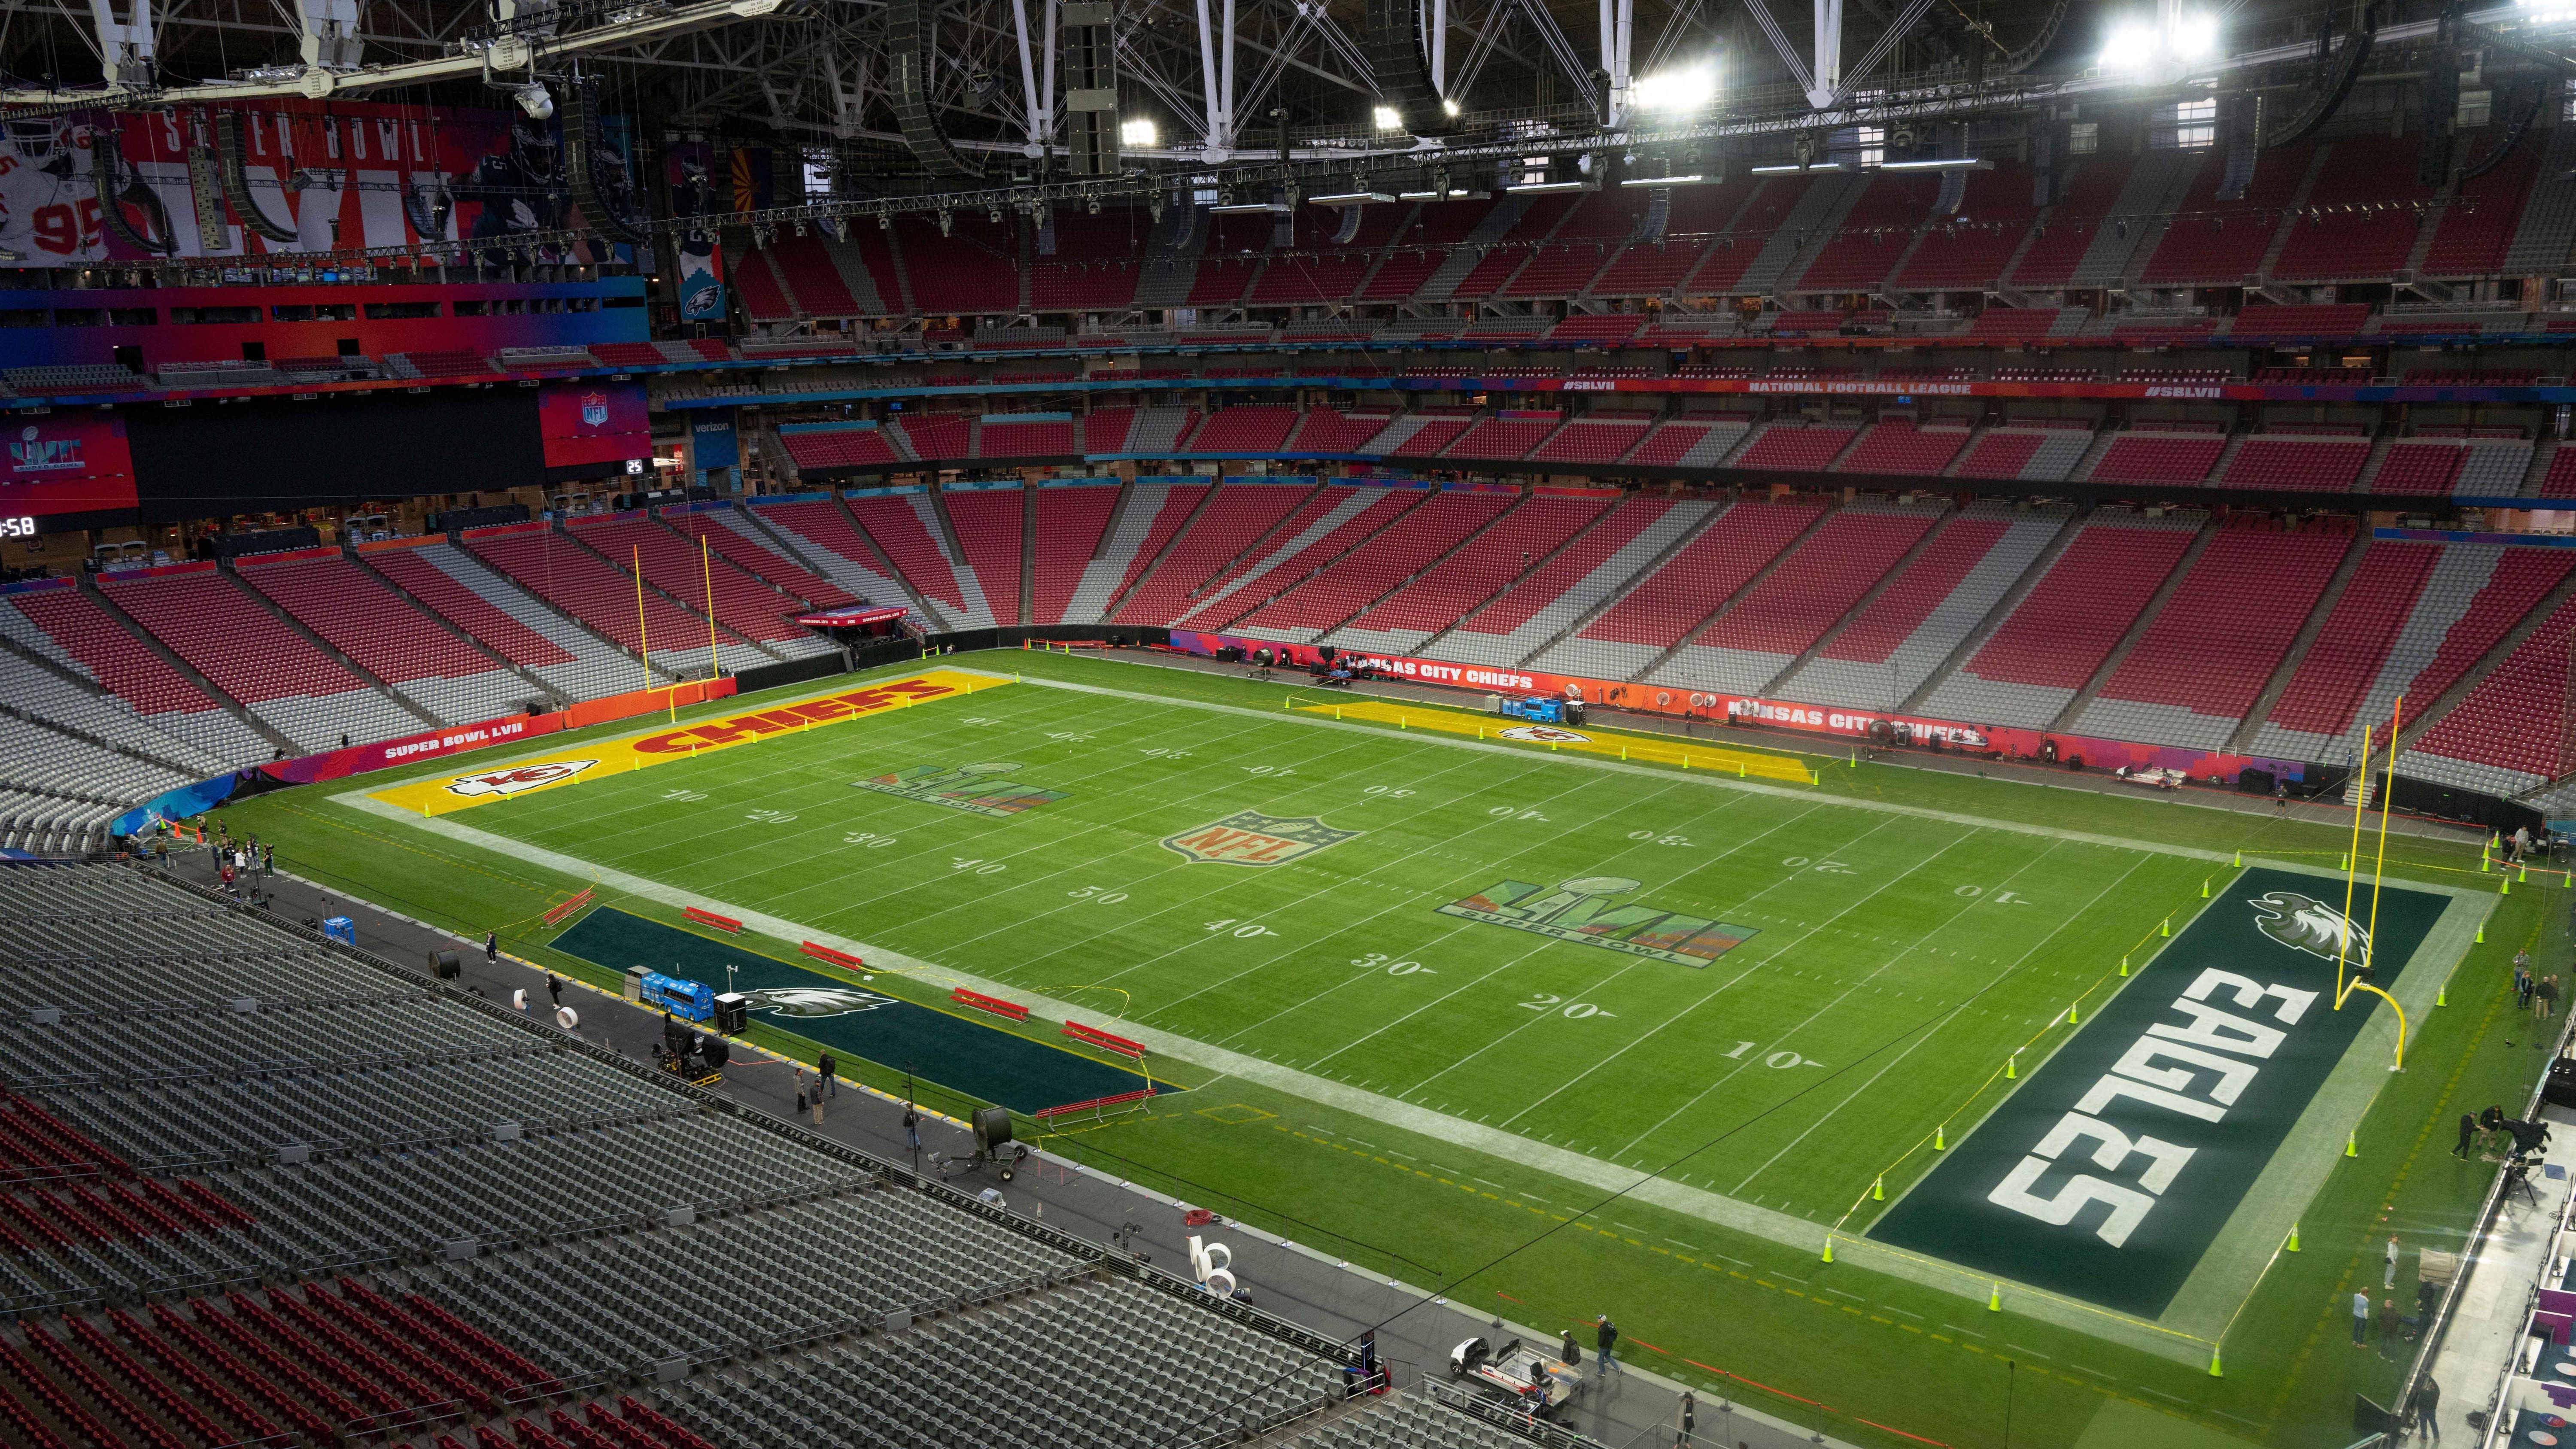 
                <strong>Super Bowl LVII: Die besten Bilder vom State Farm Stadium aus Glendale, Arizona</strong><br>
                ... ist mittlerweile auch voll funktionsfähig im Inneren des State Farm Stadiums eingebaut. Alles ist angerichtet - die Chiefs bekommen eine gelbe Endzone mit roter Schrift, die Eagles eine dunkelgrüne mit weißer Schrift.  
              